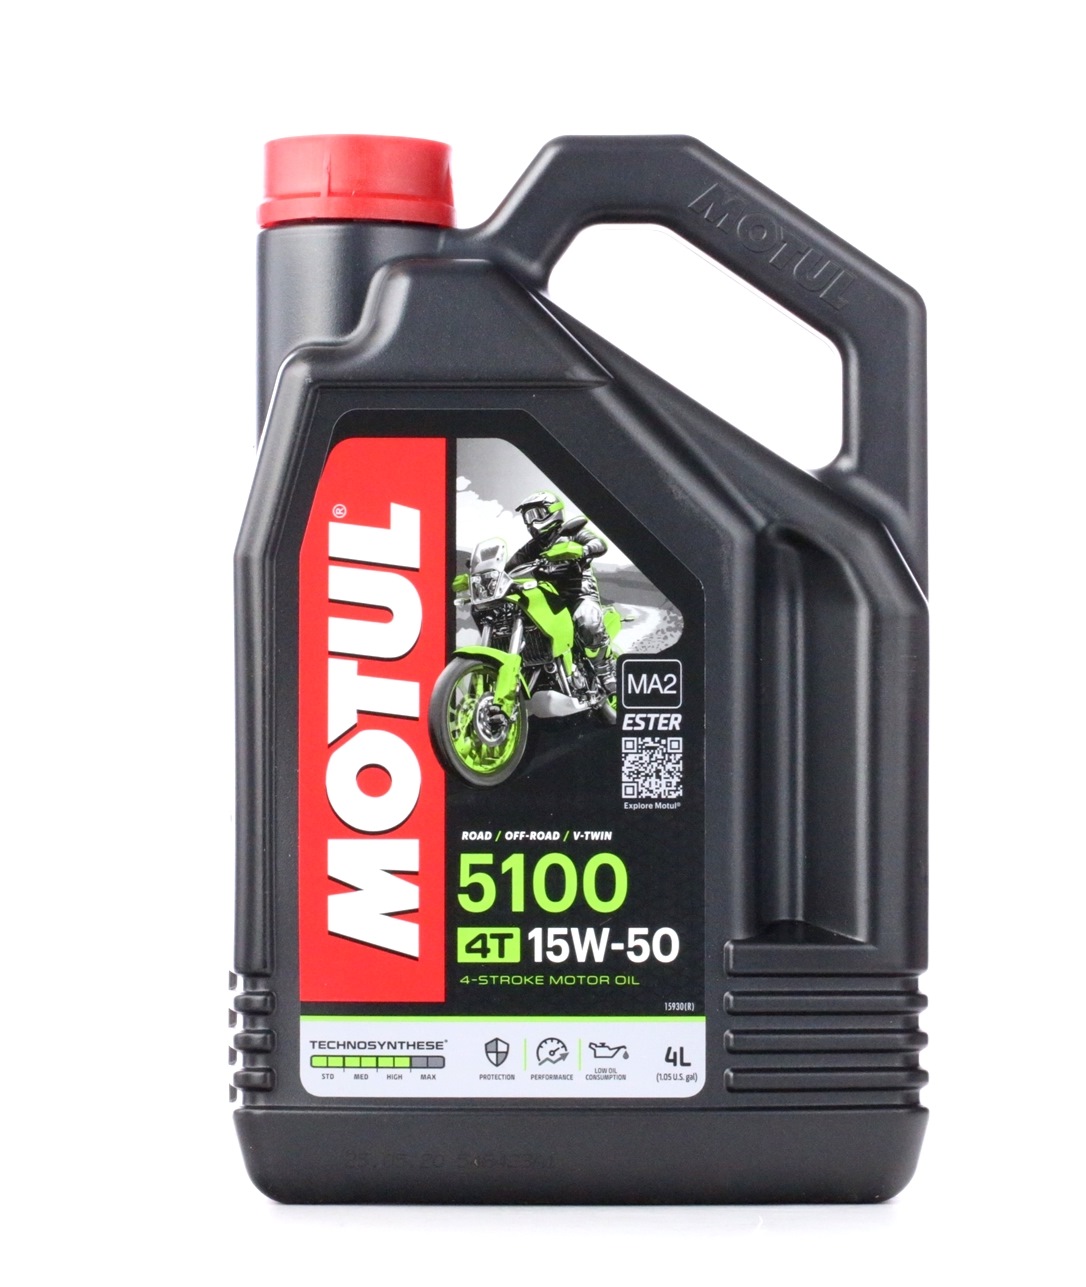 Motoröl API SG MOTUL günstig - 104083 4T